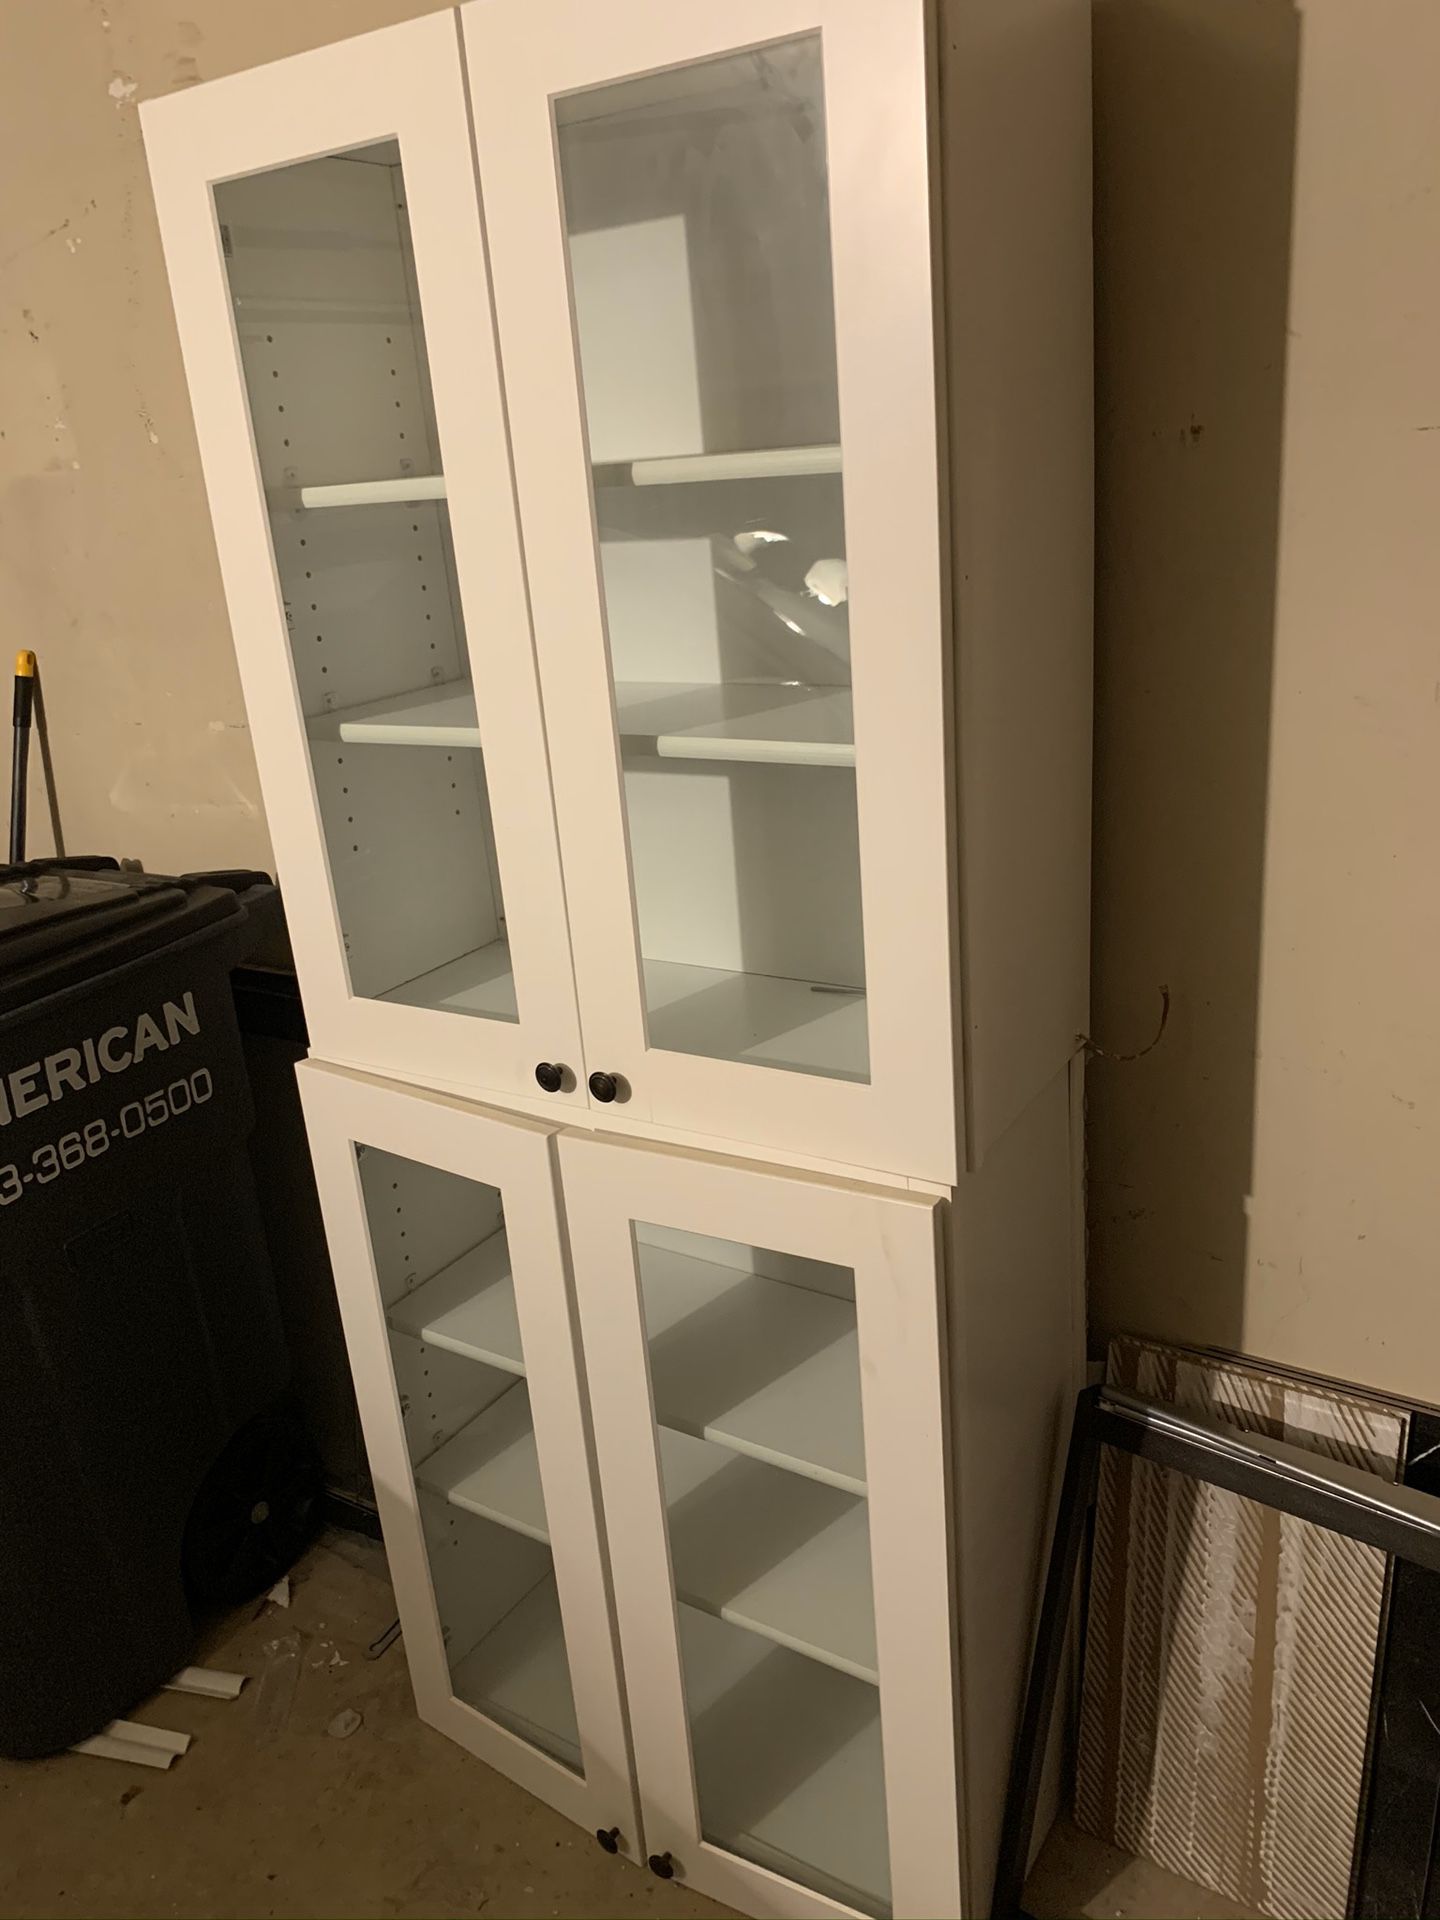 2 glass kitchen cabinets (white)